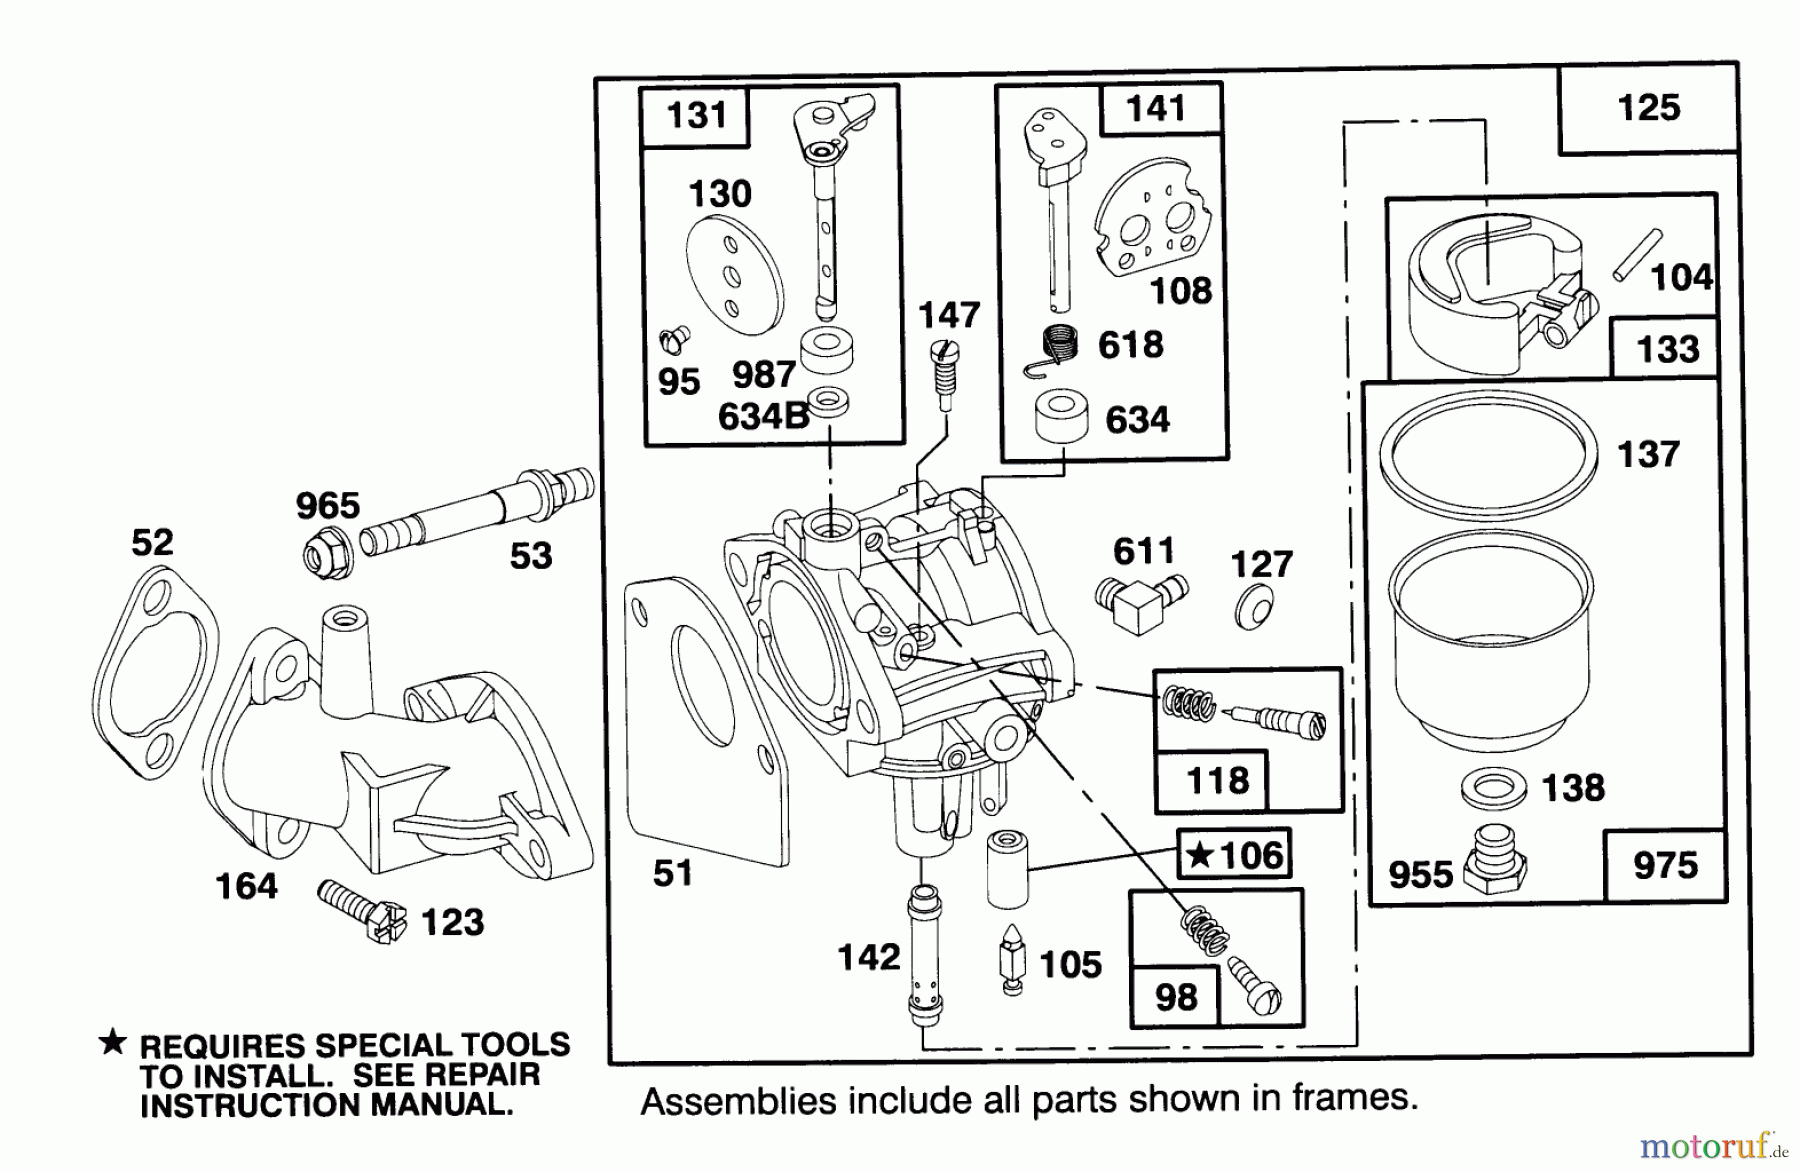  Toro Neu Mowers, Lawn & Garden Tractor Seite 1 71213 (13-38HXL) - Toro 13-38HXL Lawn Tractor, 1995 (59100001-59999999) ENGINE BRIGGS & STRATTON MODEL 28M707-0122-01 #3